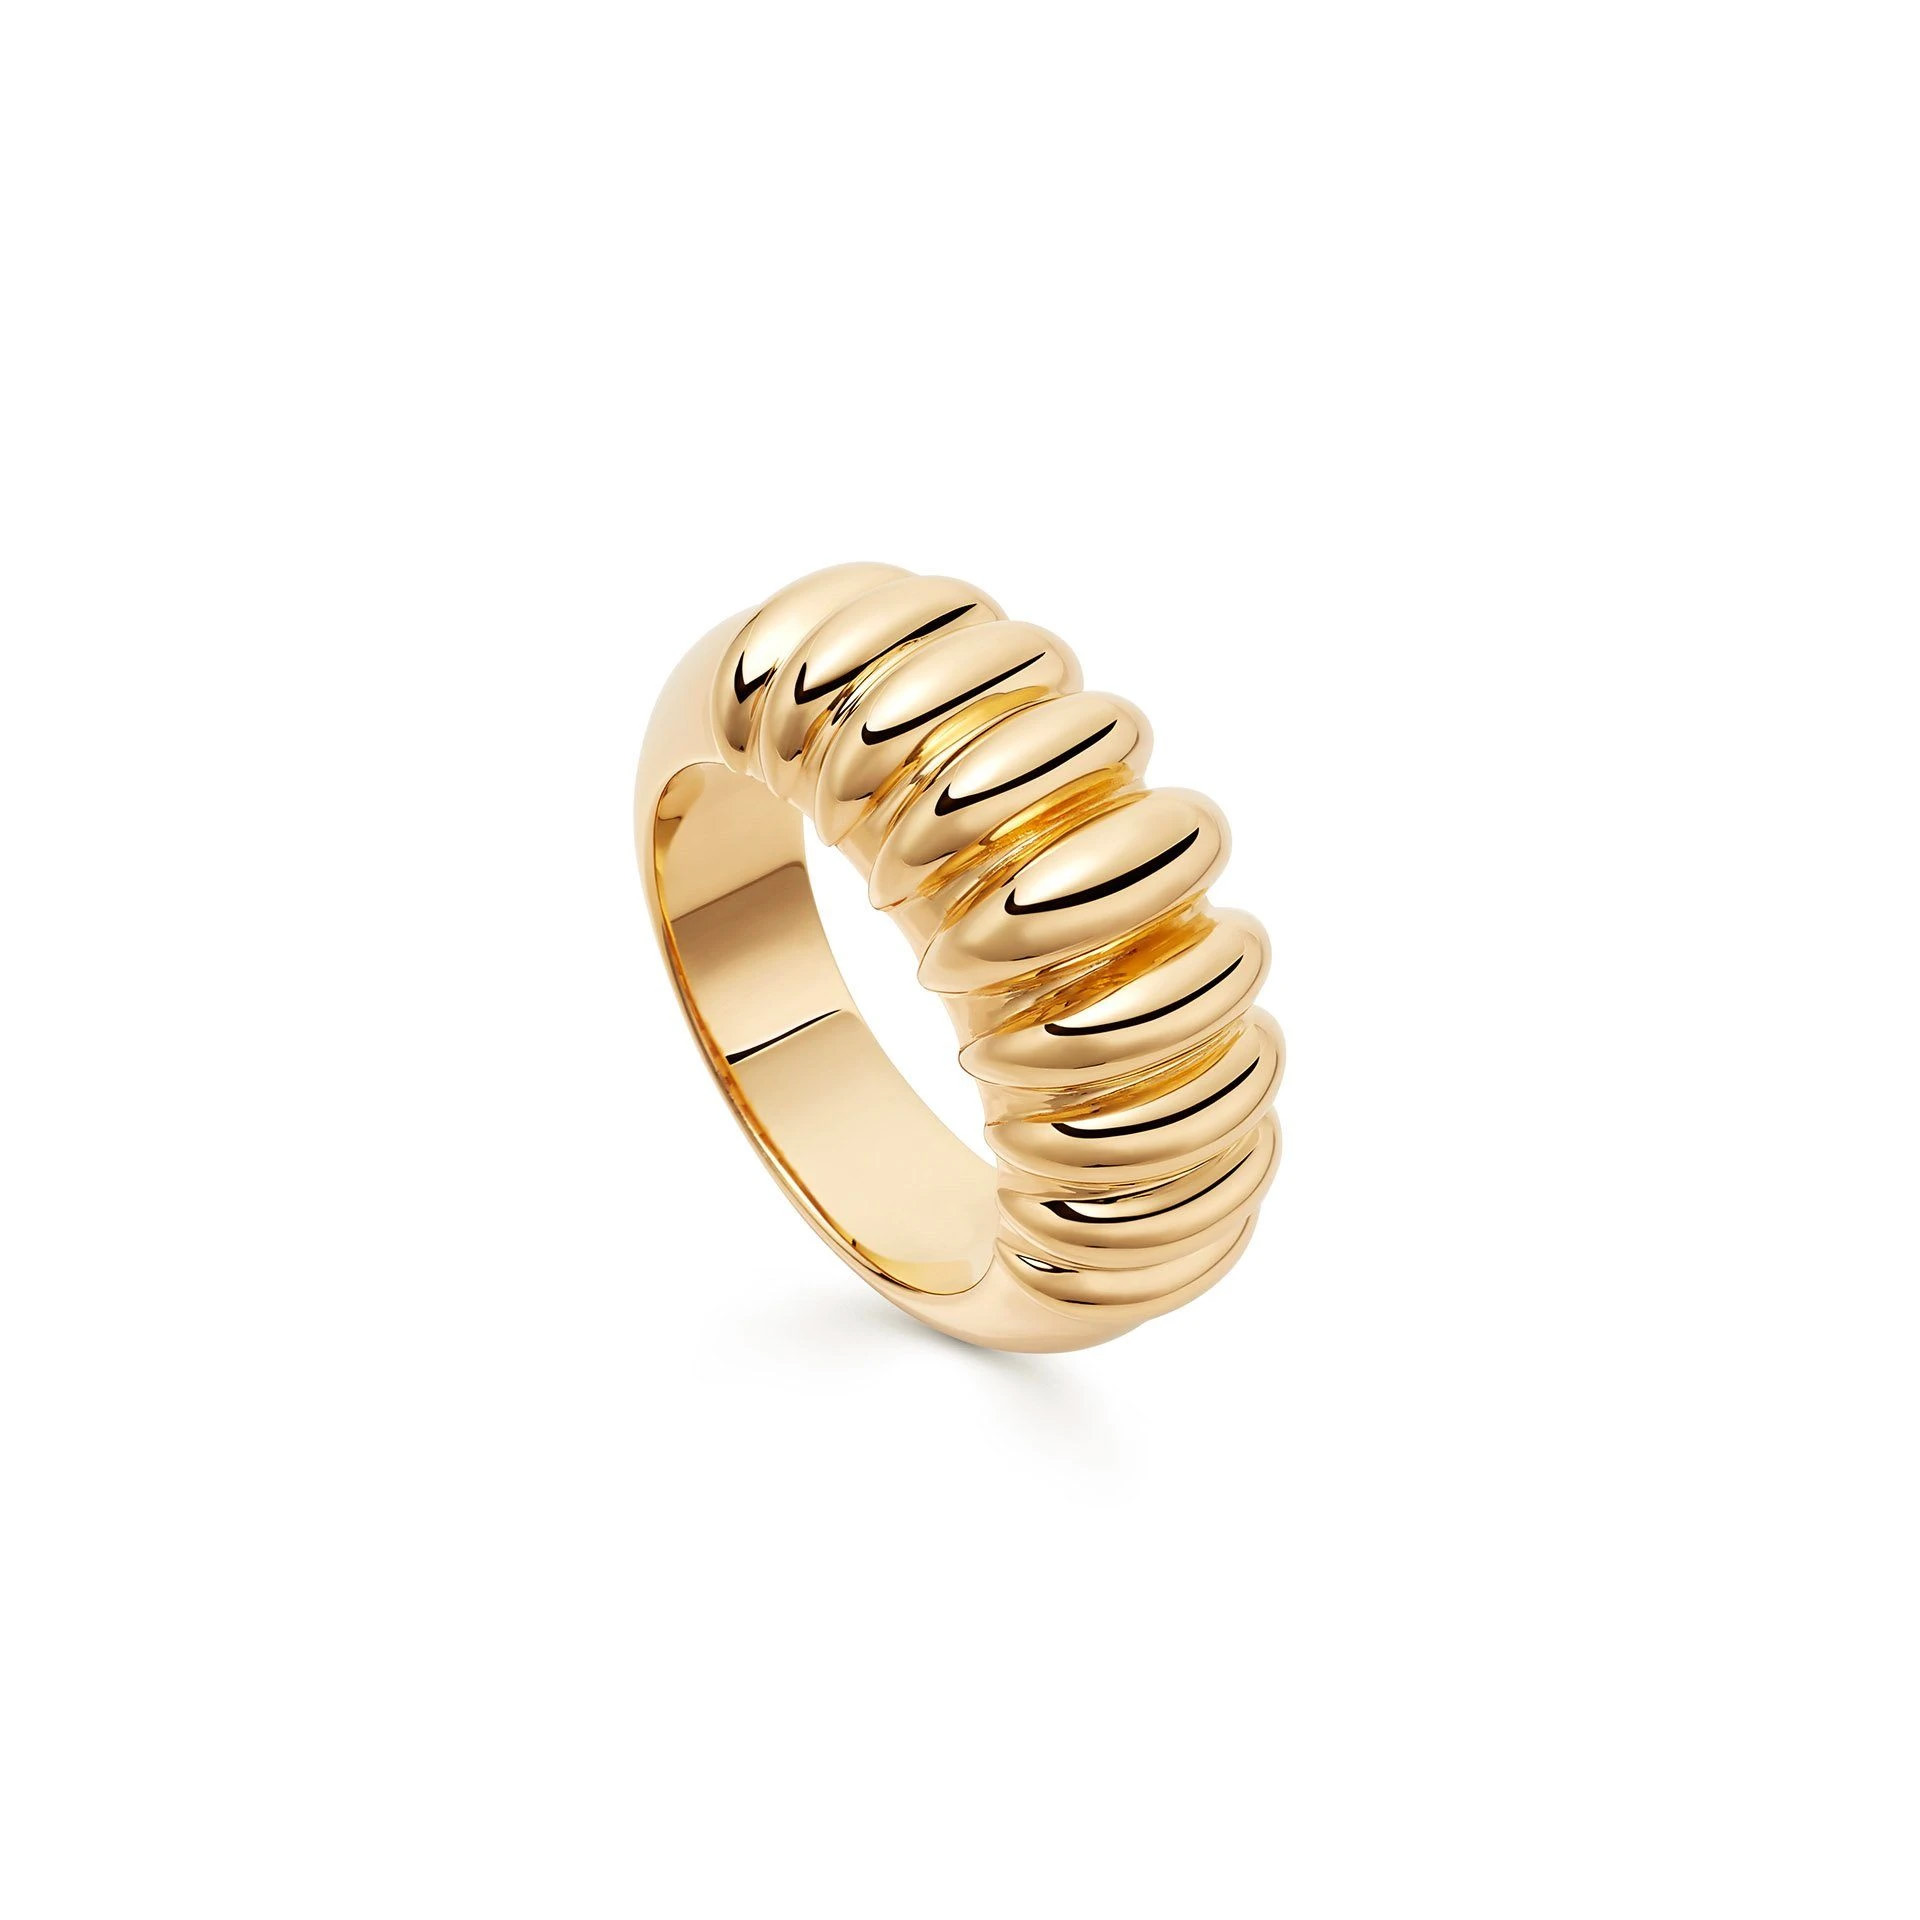 Оптовая продажа, персонализированное кольцо из 18-каратного золота с покрытием из латуни или стерлингового серебра OEM ювелирная фабрика OEM/ODM ювелирные изделия